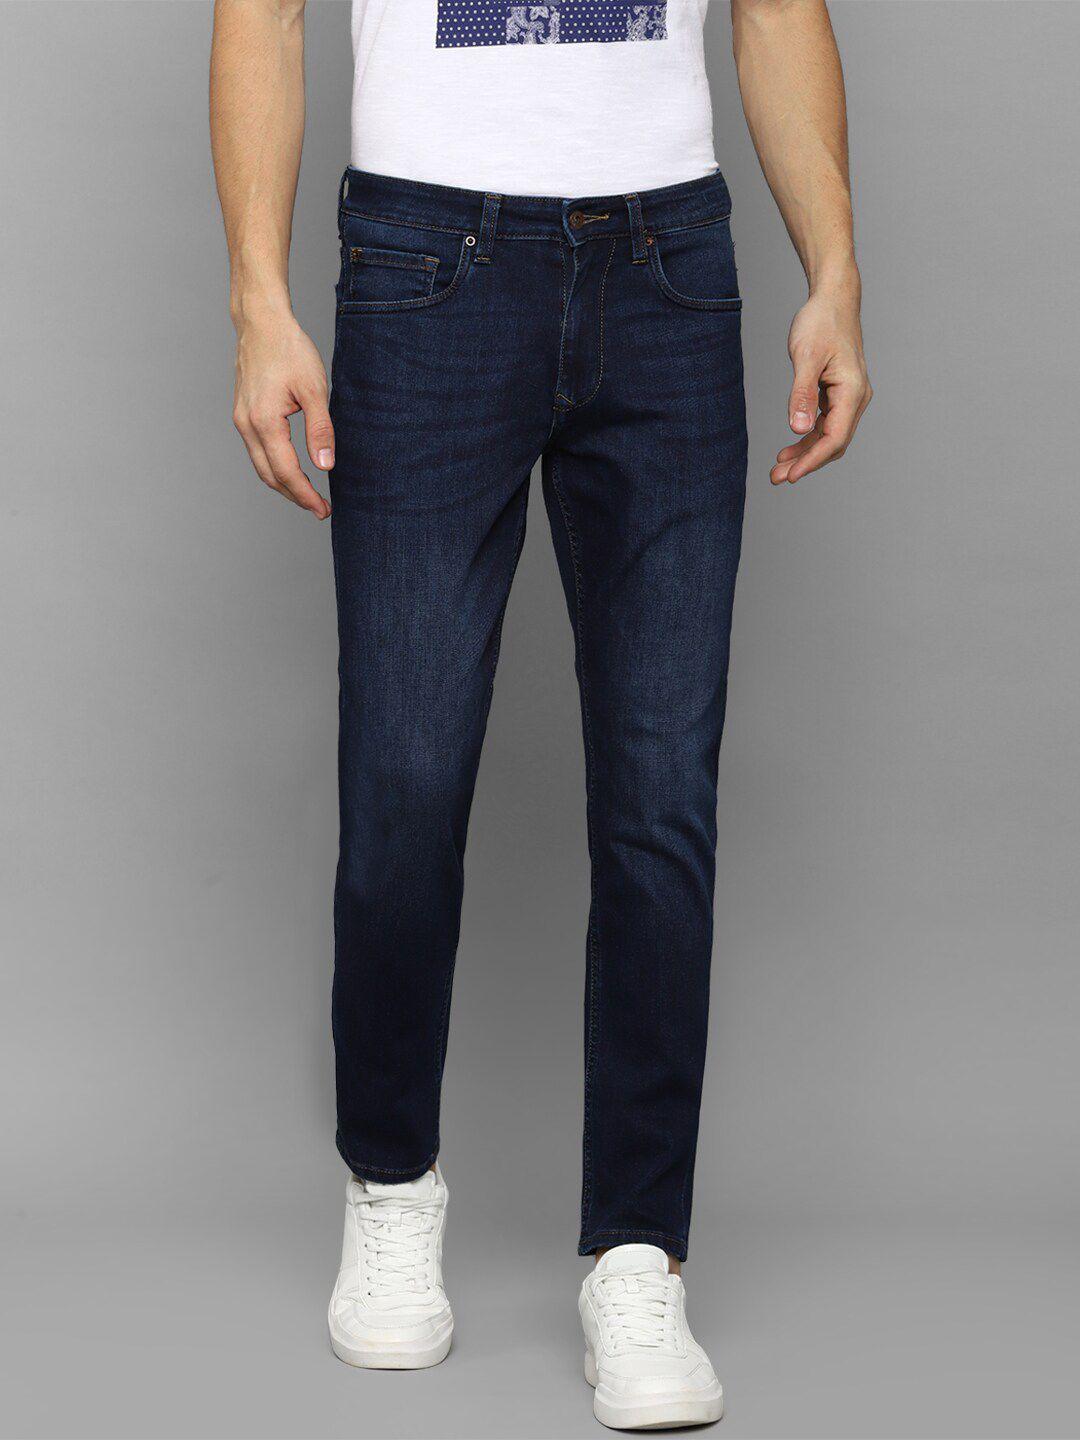 louis-philippe-jeans-men-navy-blue-slim-fit-jeans